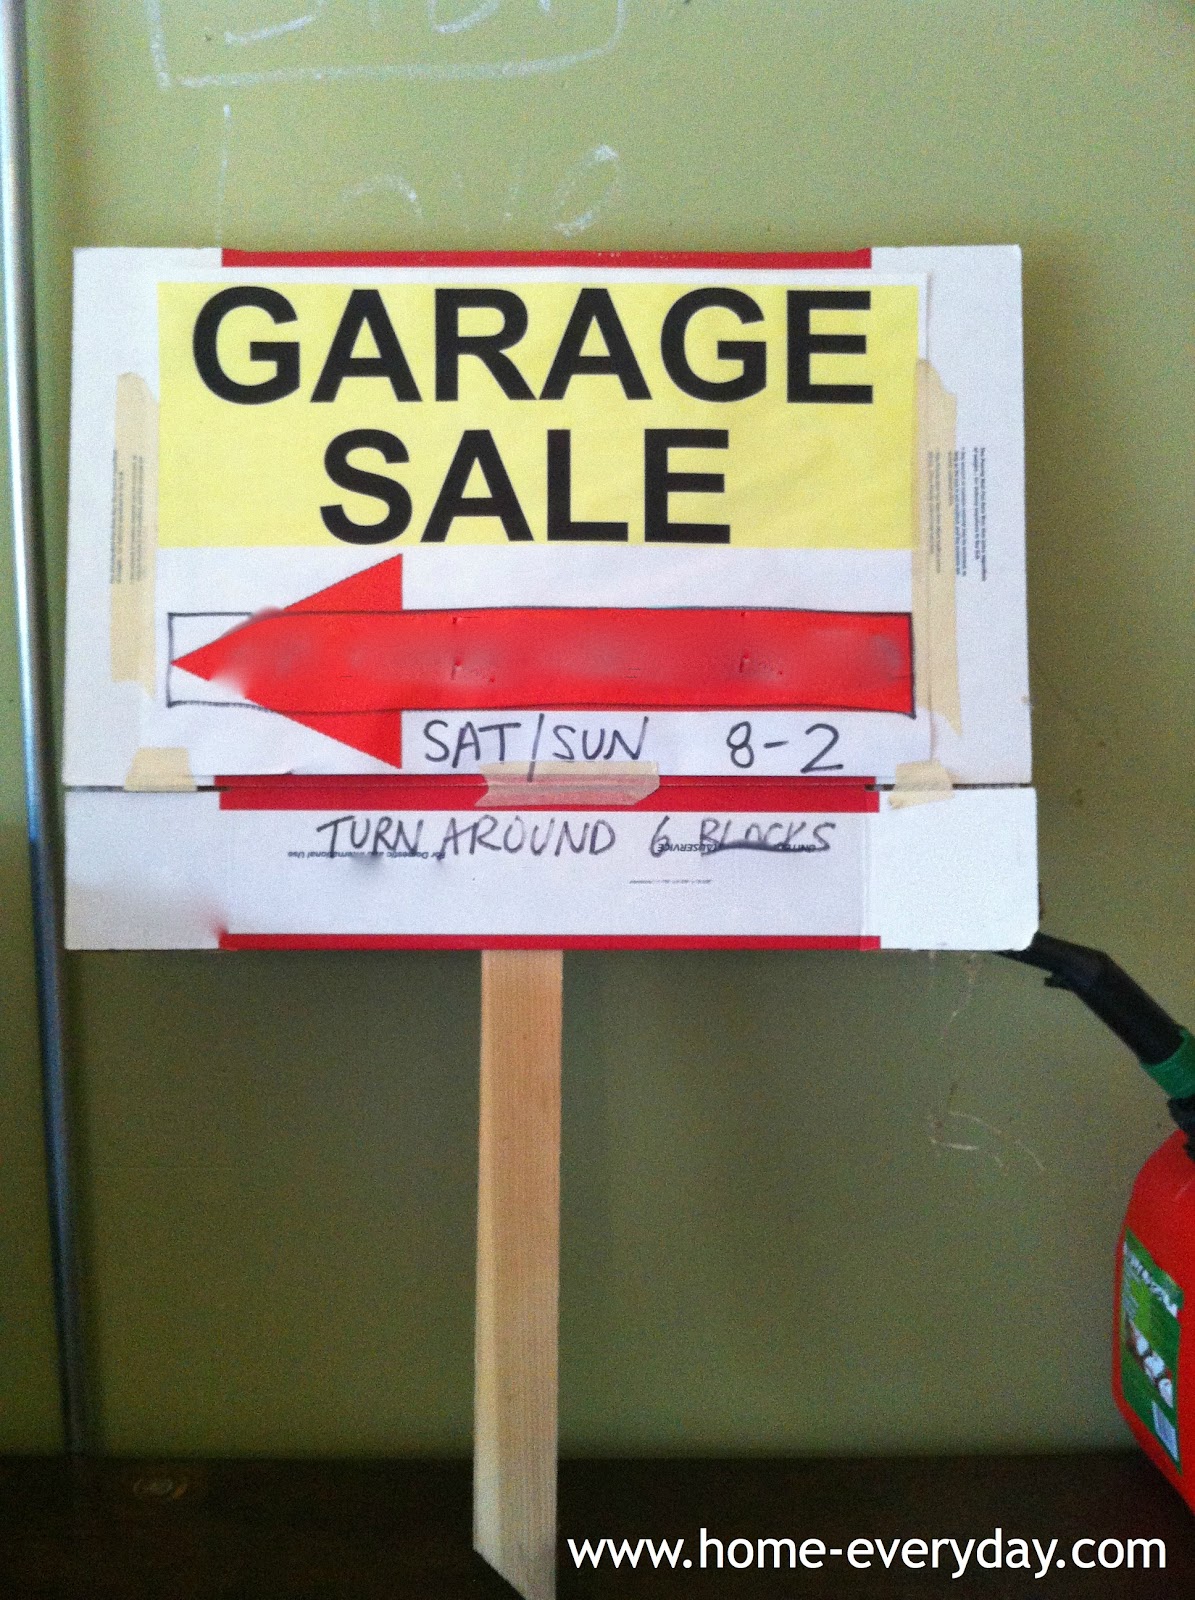 http://1.bp.blogspot.com/-BhKVe2848J4/UBZ2L2kQC9I/AAAAAAAAAxA/P6fvA4YPvaA/s1600/Garage+Sale+Sign.jpg